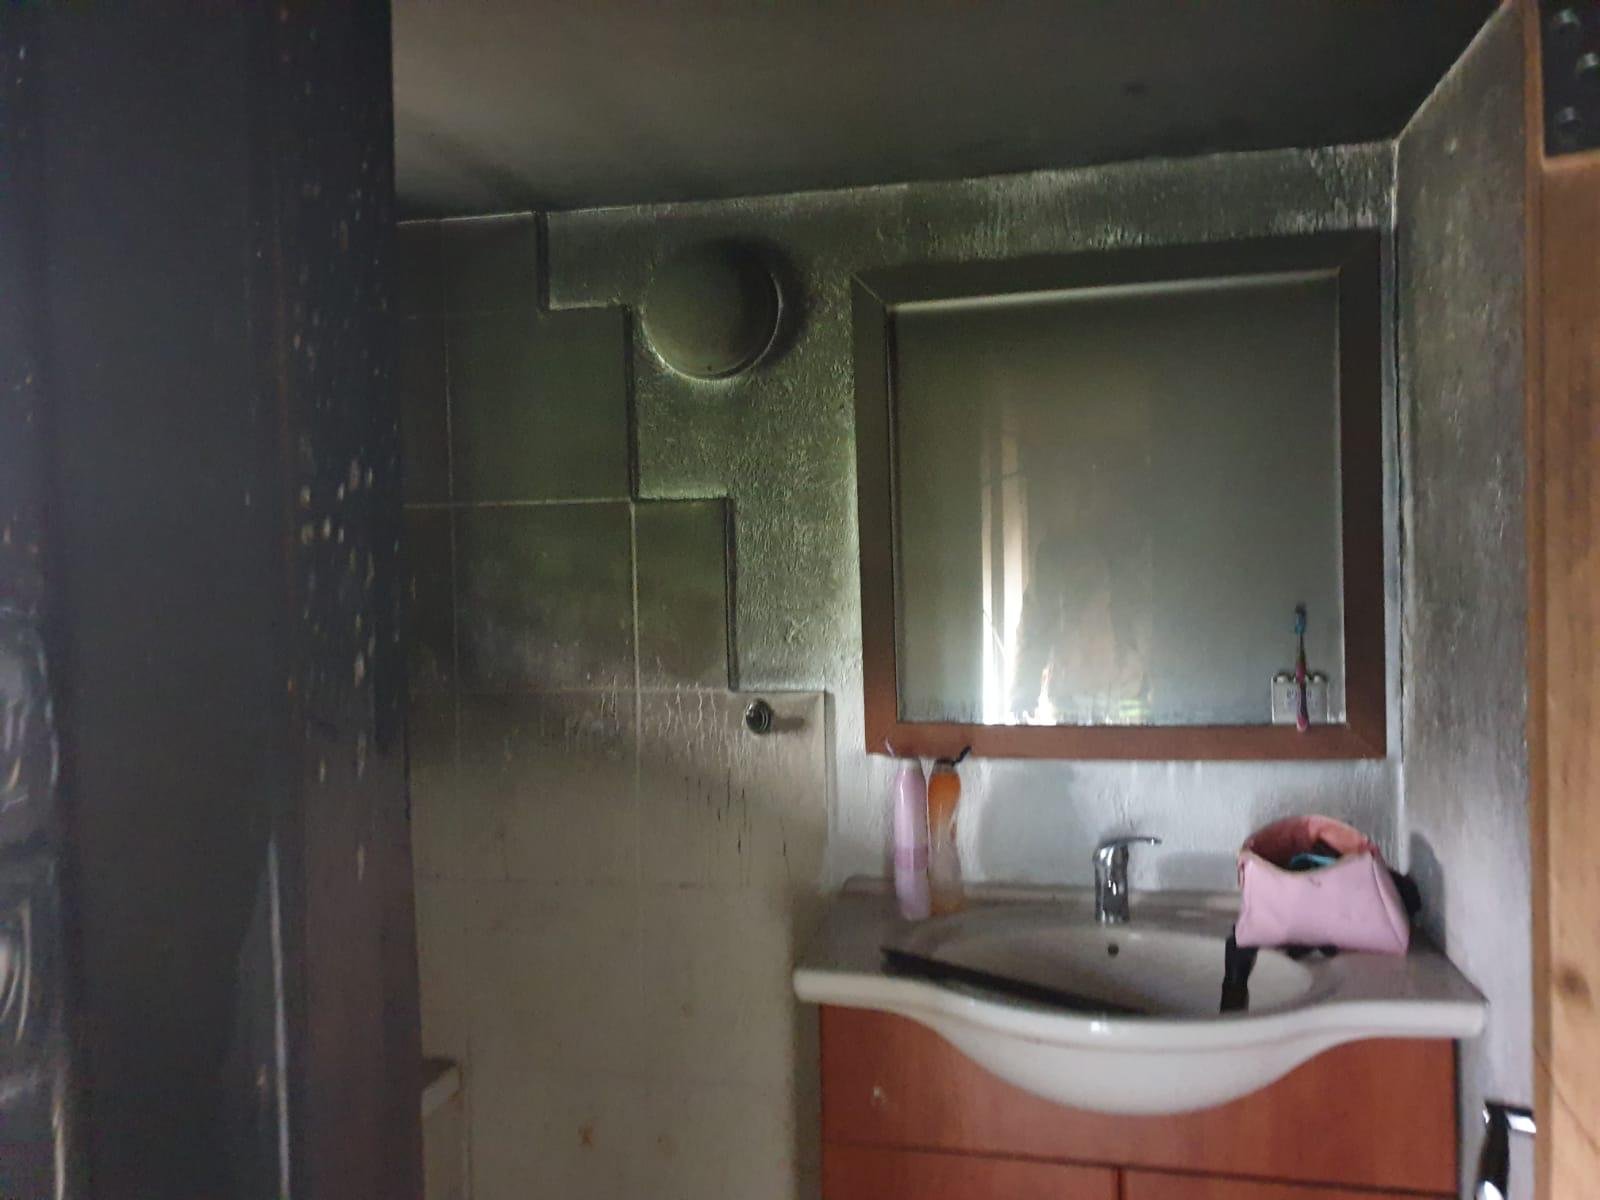 حيفا: احتراق فرشة داخل غرفة نوم بشقة سكنية كاد أن يؤدي الى كارثة -1